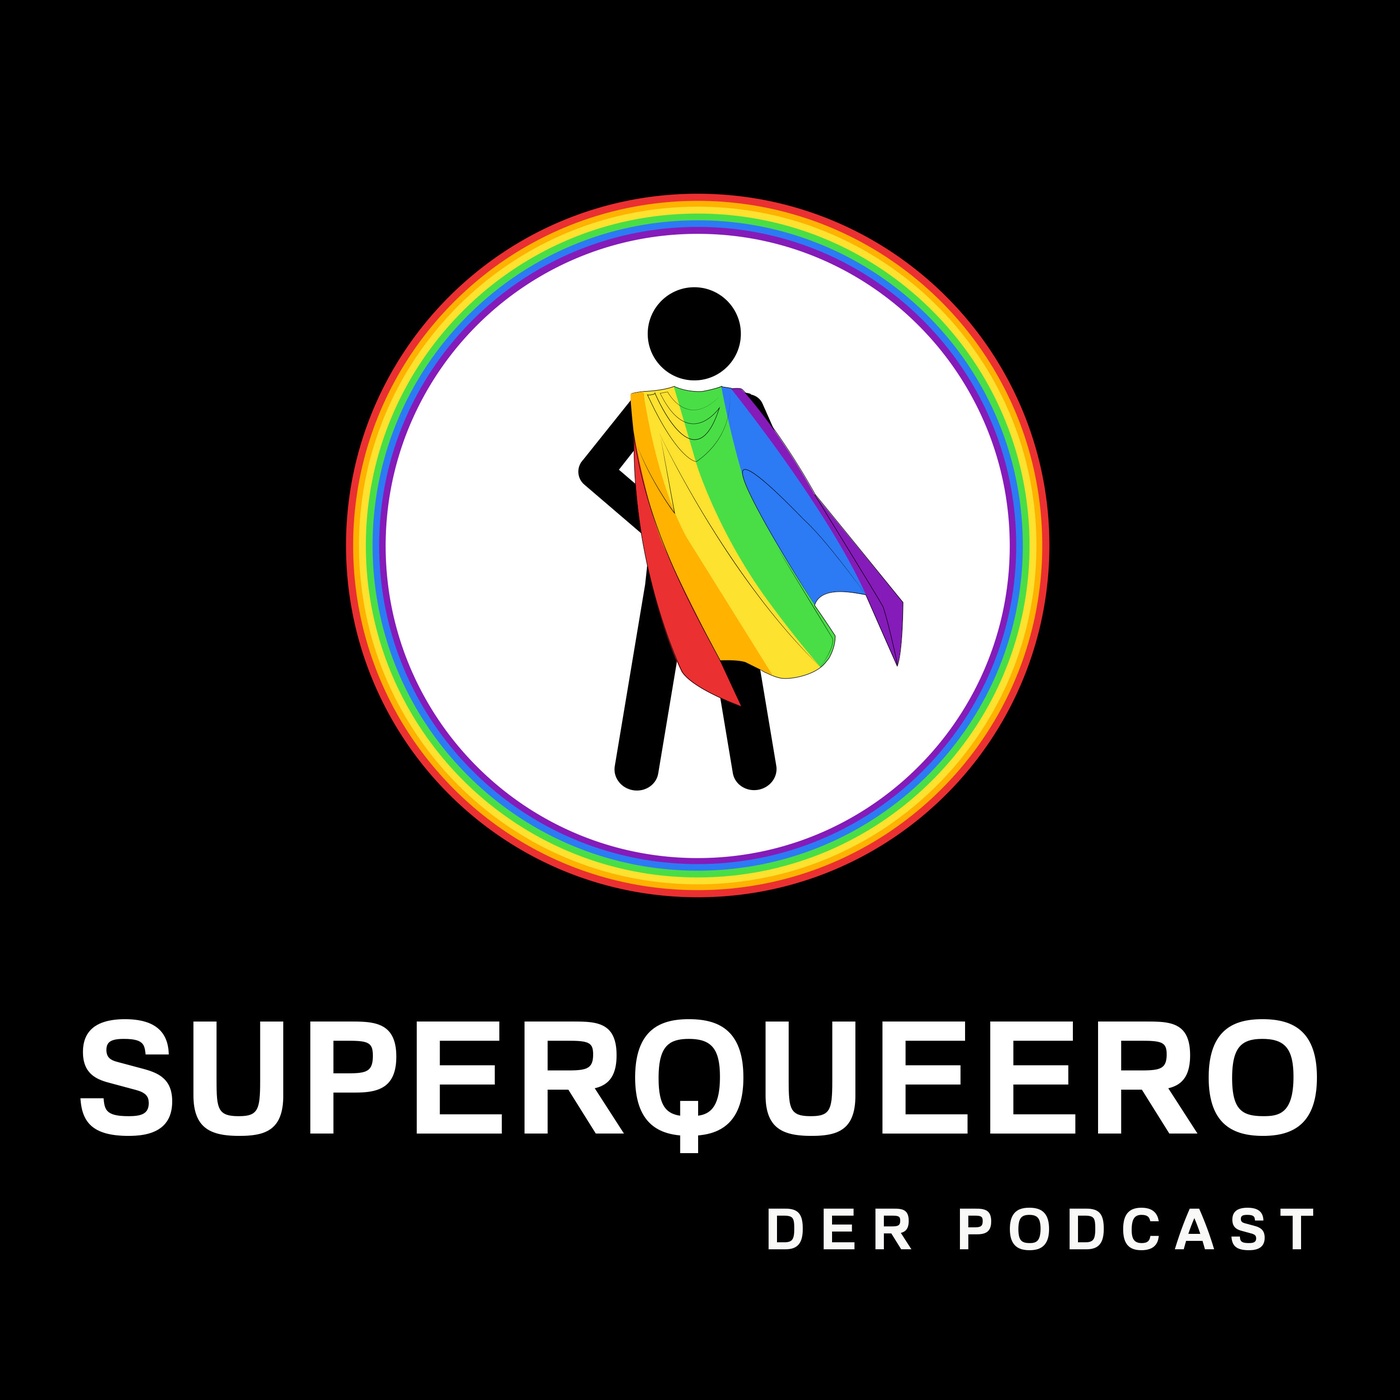 Superqueero - der Podcast